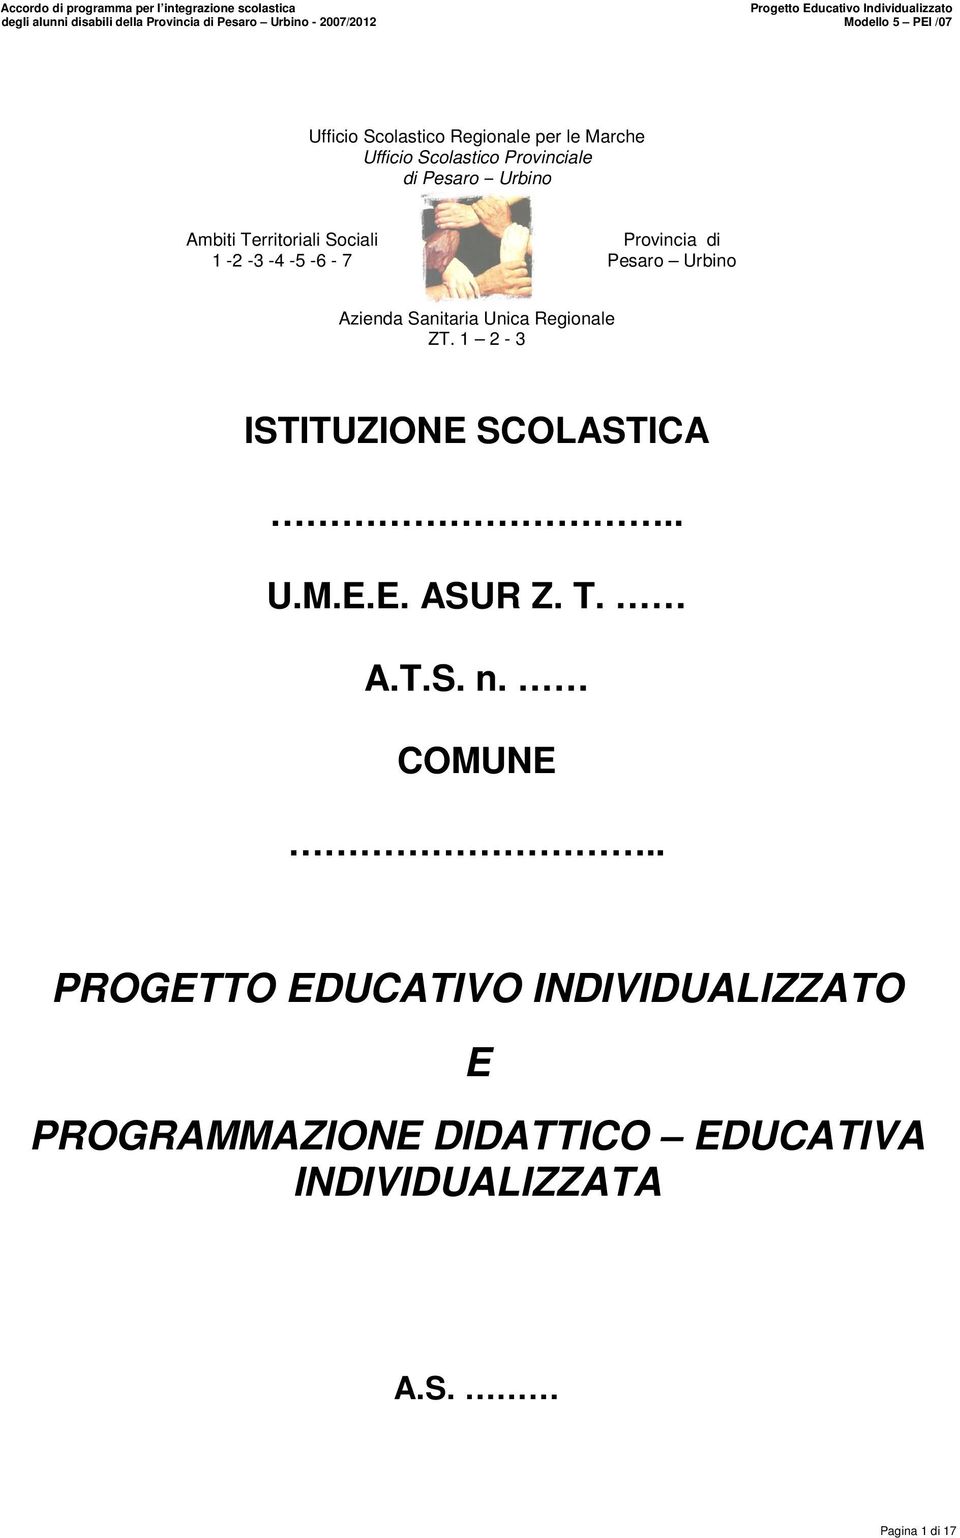 Unica Regionale ZT. 1 2-3 ISTITUZIONE SCOLASTICA.. U.M.E.E. ASUR Z. T. A.T.S. n. COMUNE.